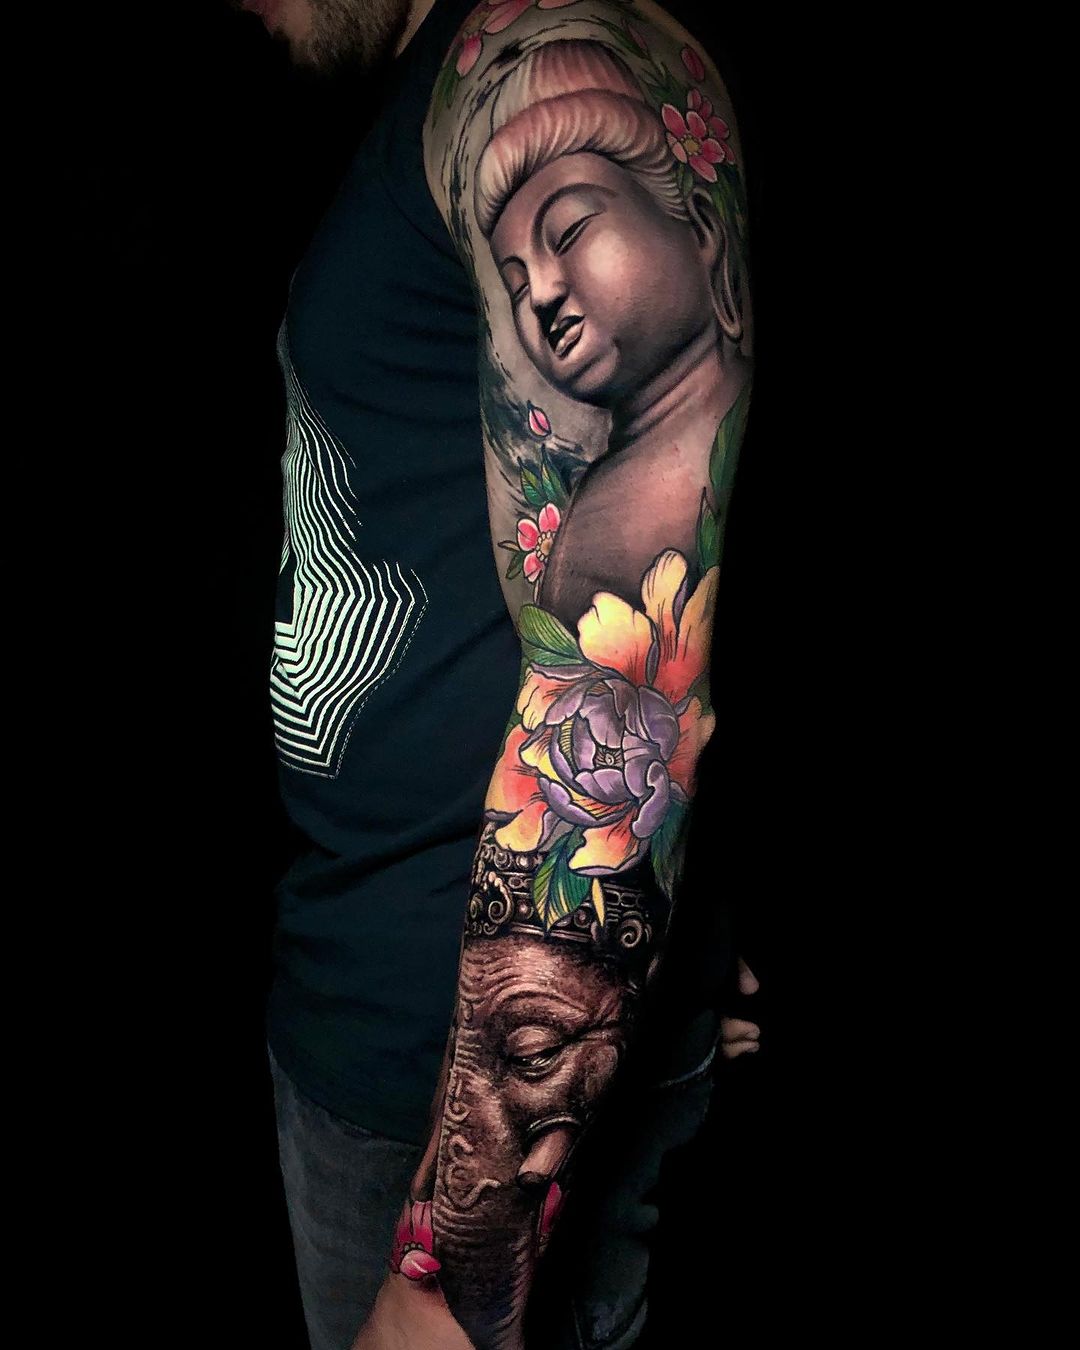 Lexica - White woman, arm tattoo snake lotus, black hair